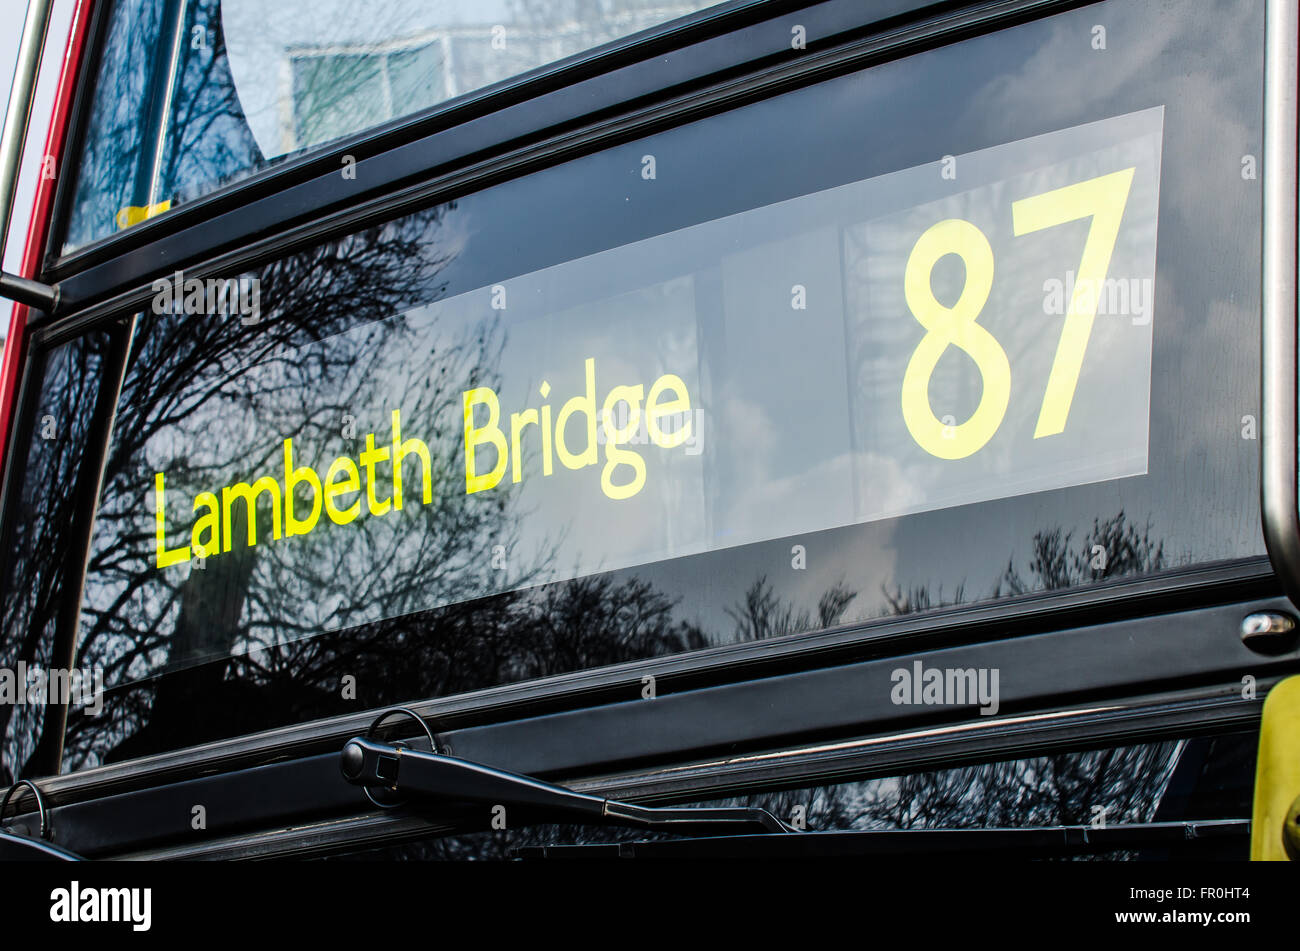 Conseil destination London bus 'lecture' pont de Lambeth sur route 87. UK Banque D'Images